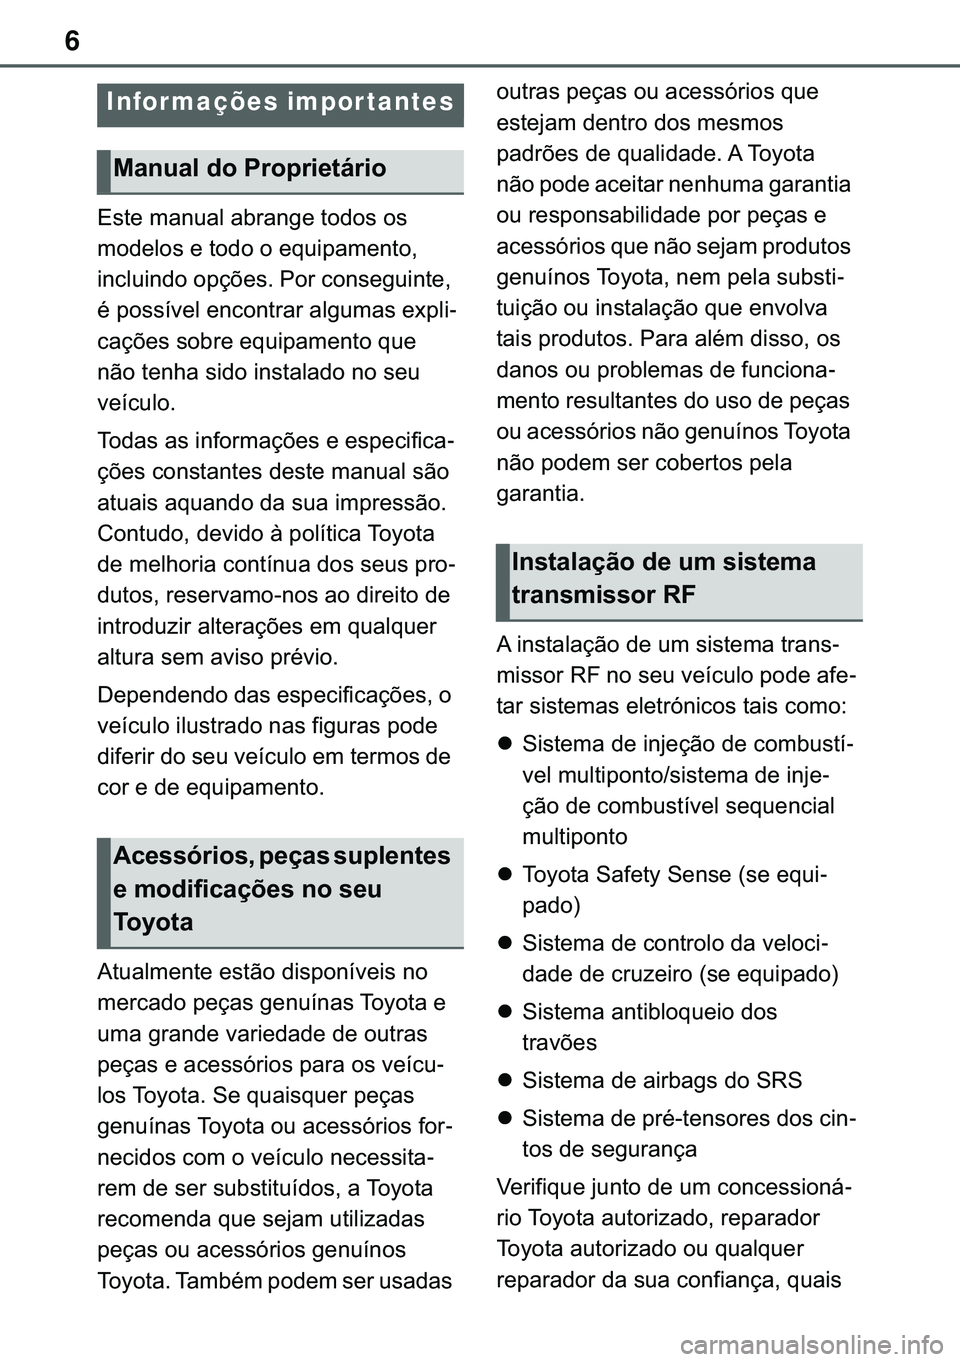 TOYOTA COROLLA HATCHBACK 2020  Manual de utilização (in Portuguese) 6
�(�V�W�H��P�D�Q�X�D�O��D�E�U�D�Q�J�H��W�R�G�R�V��R�V�
�P�R�G�H�O�R�V��H��W�R�G�R��R��H�T�X�L�S�D�P�H�Q�W�R��
�L�Q�F�O�X�L�Q�G�R��R�S�o�}�H�V���3�R�U��F�R�Q�V�H�J�X�L�Q�W�H��
�p��S�